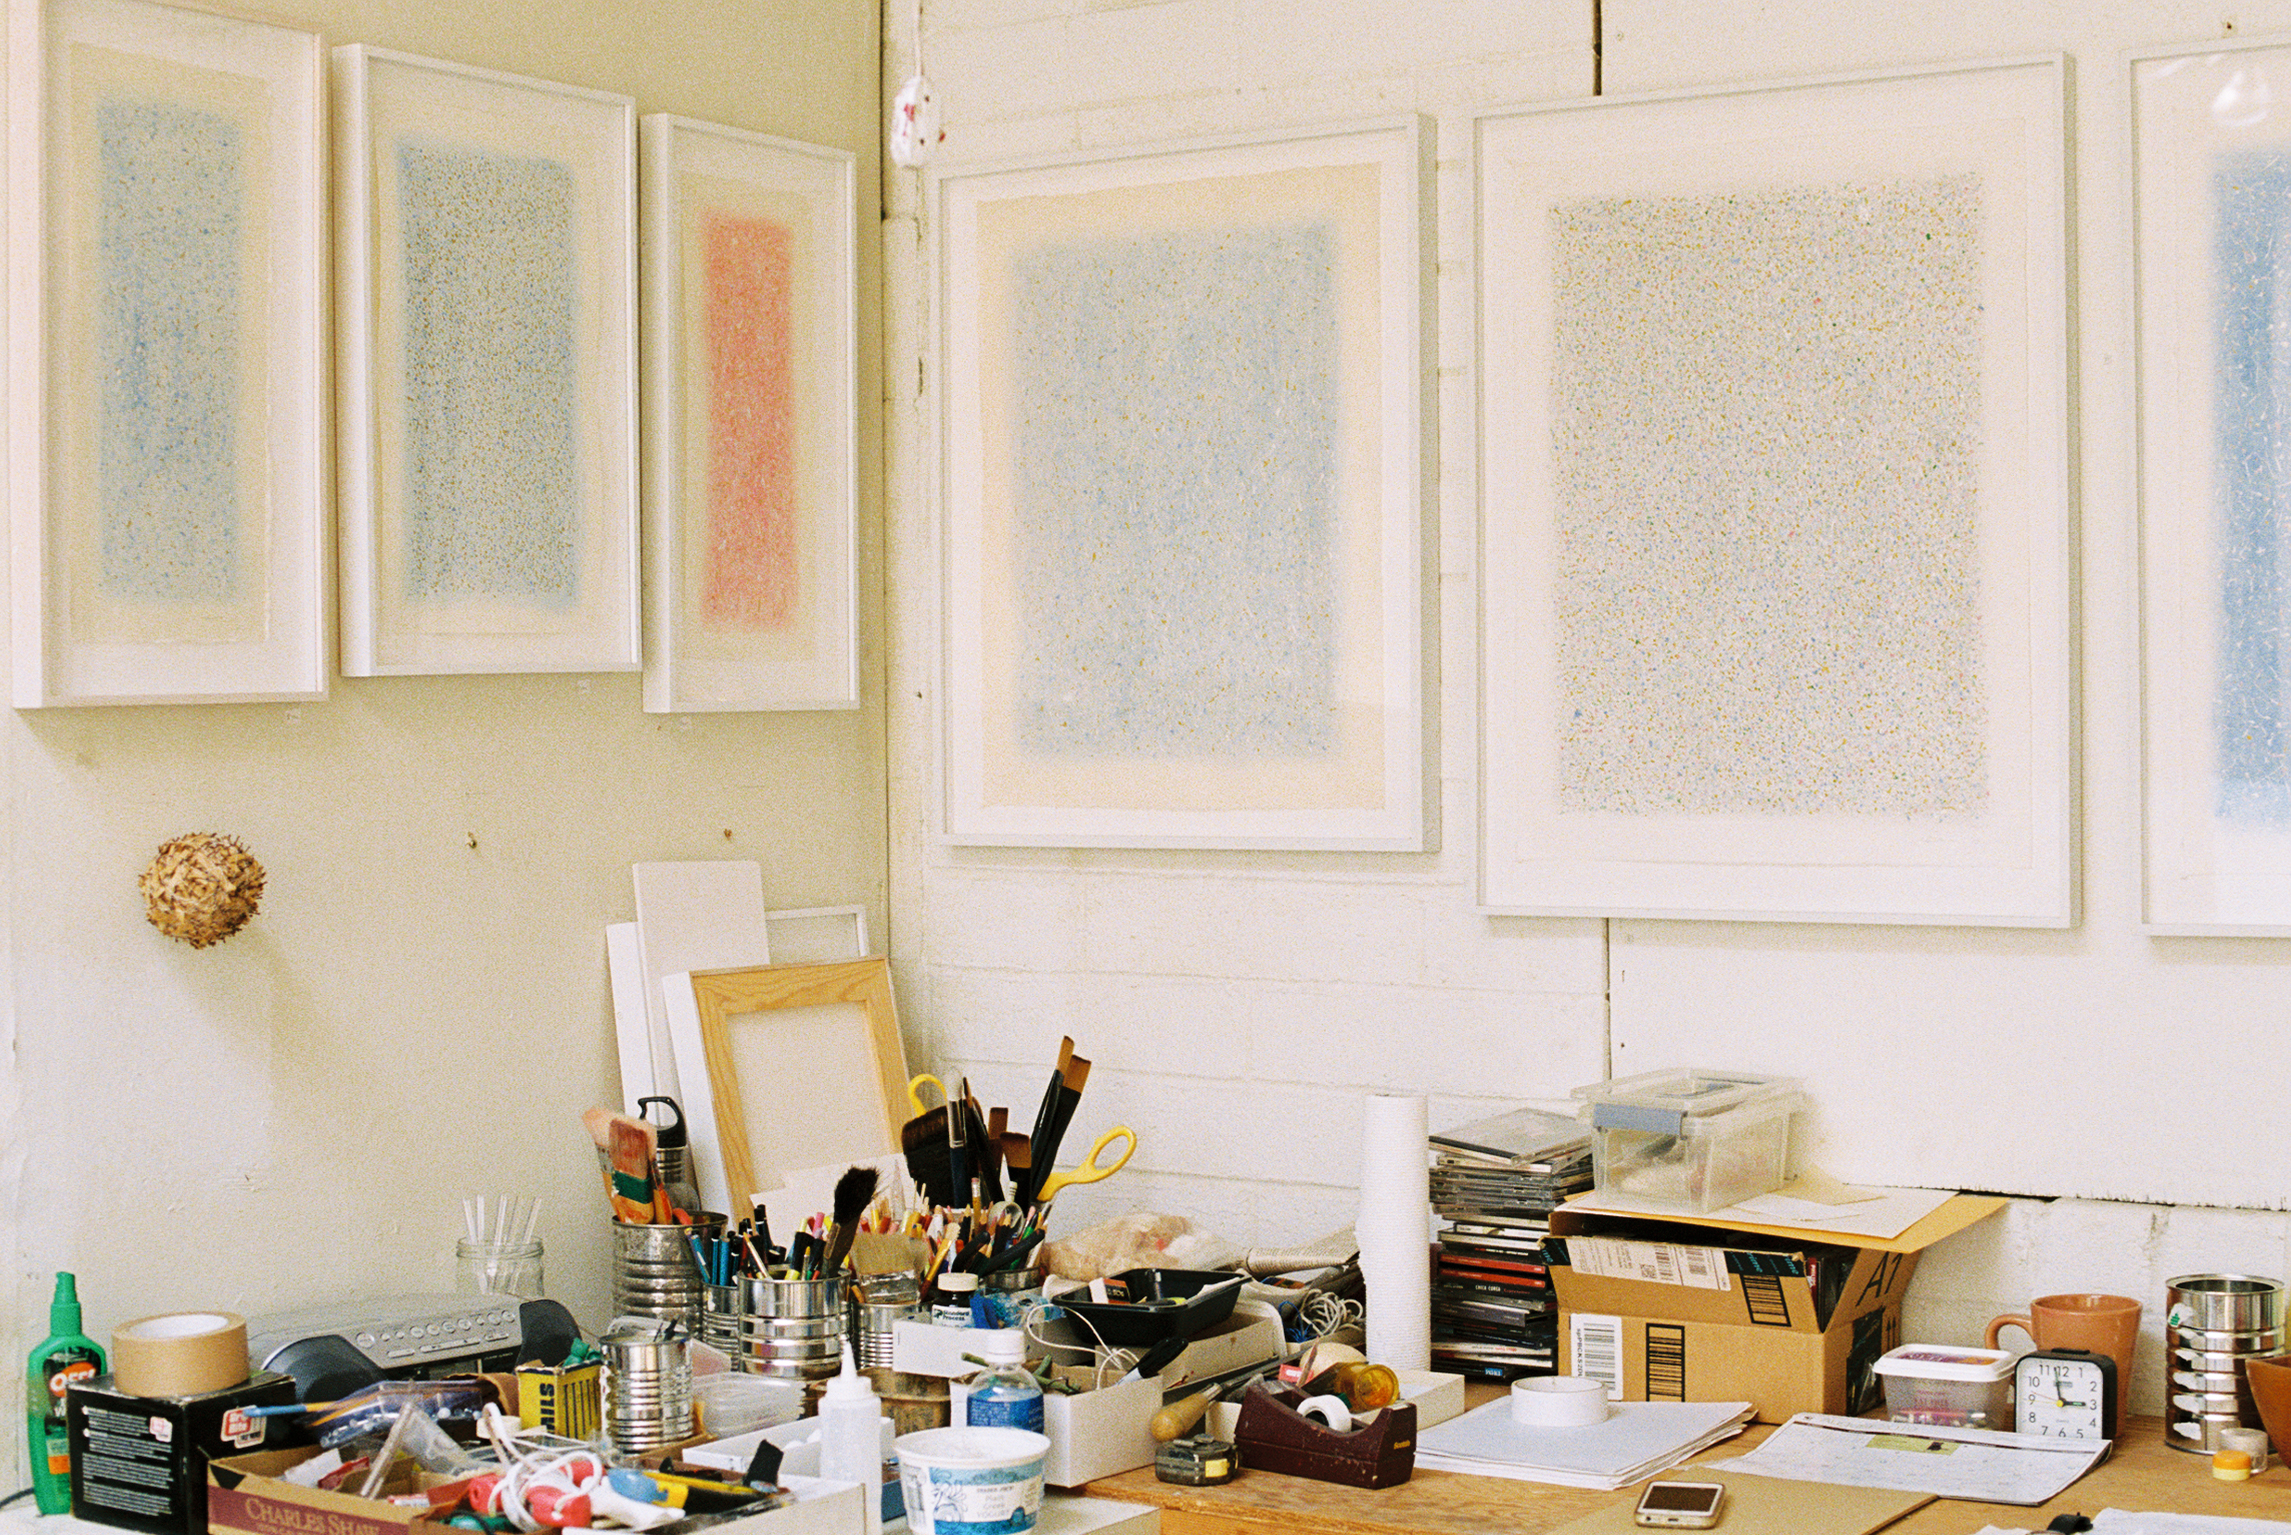 Echiko Ohira in her studio. Photo: Symrin Chawla